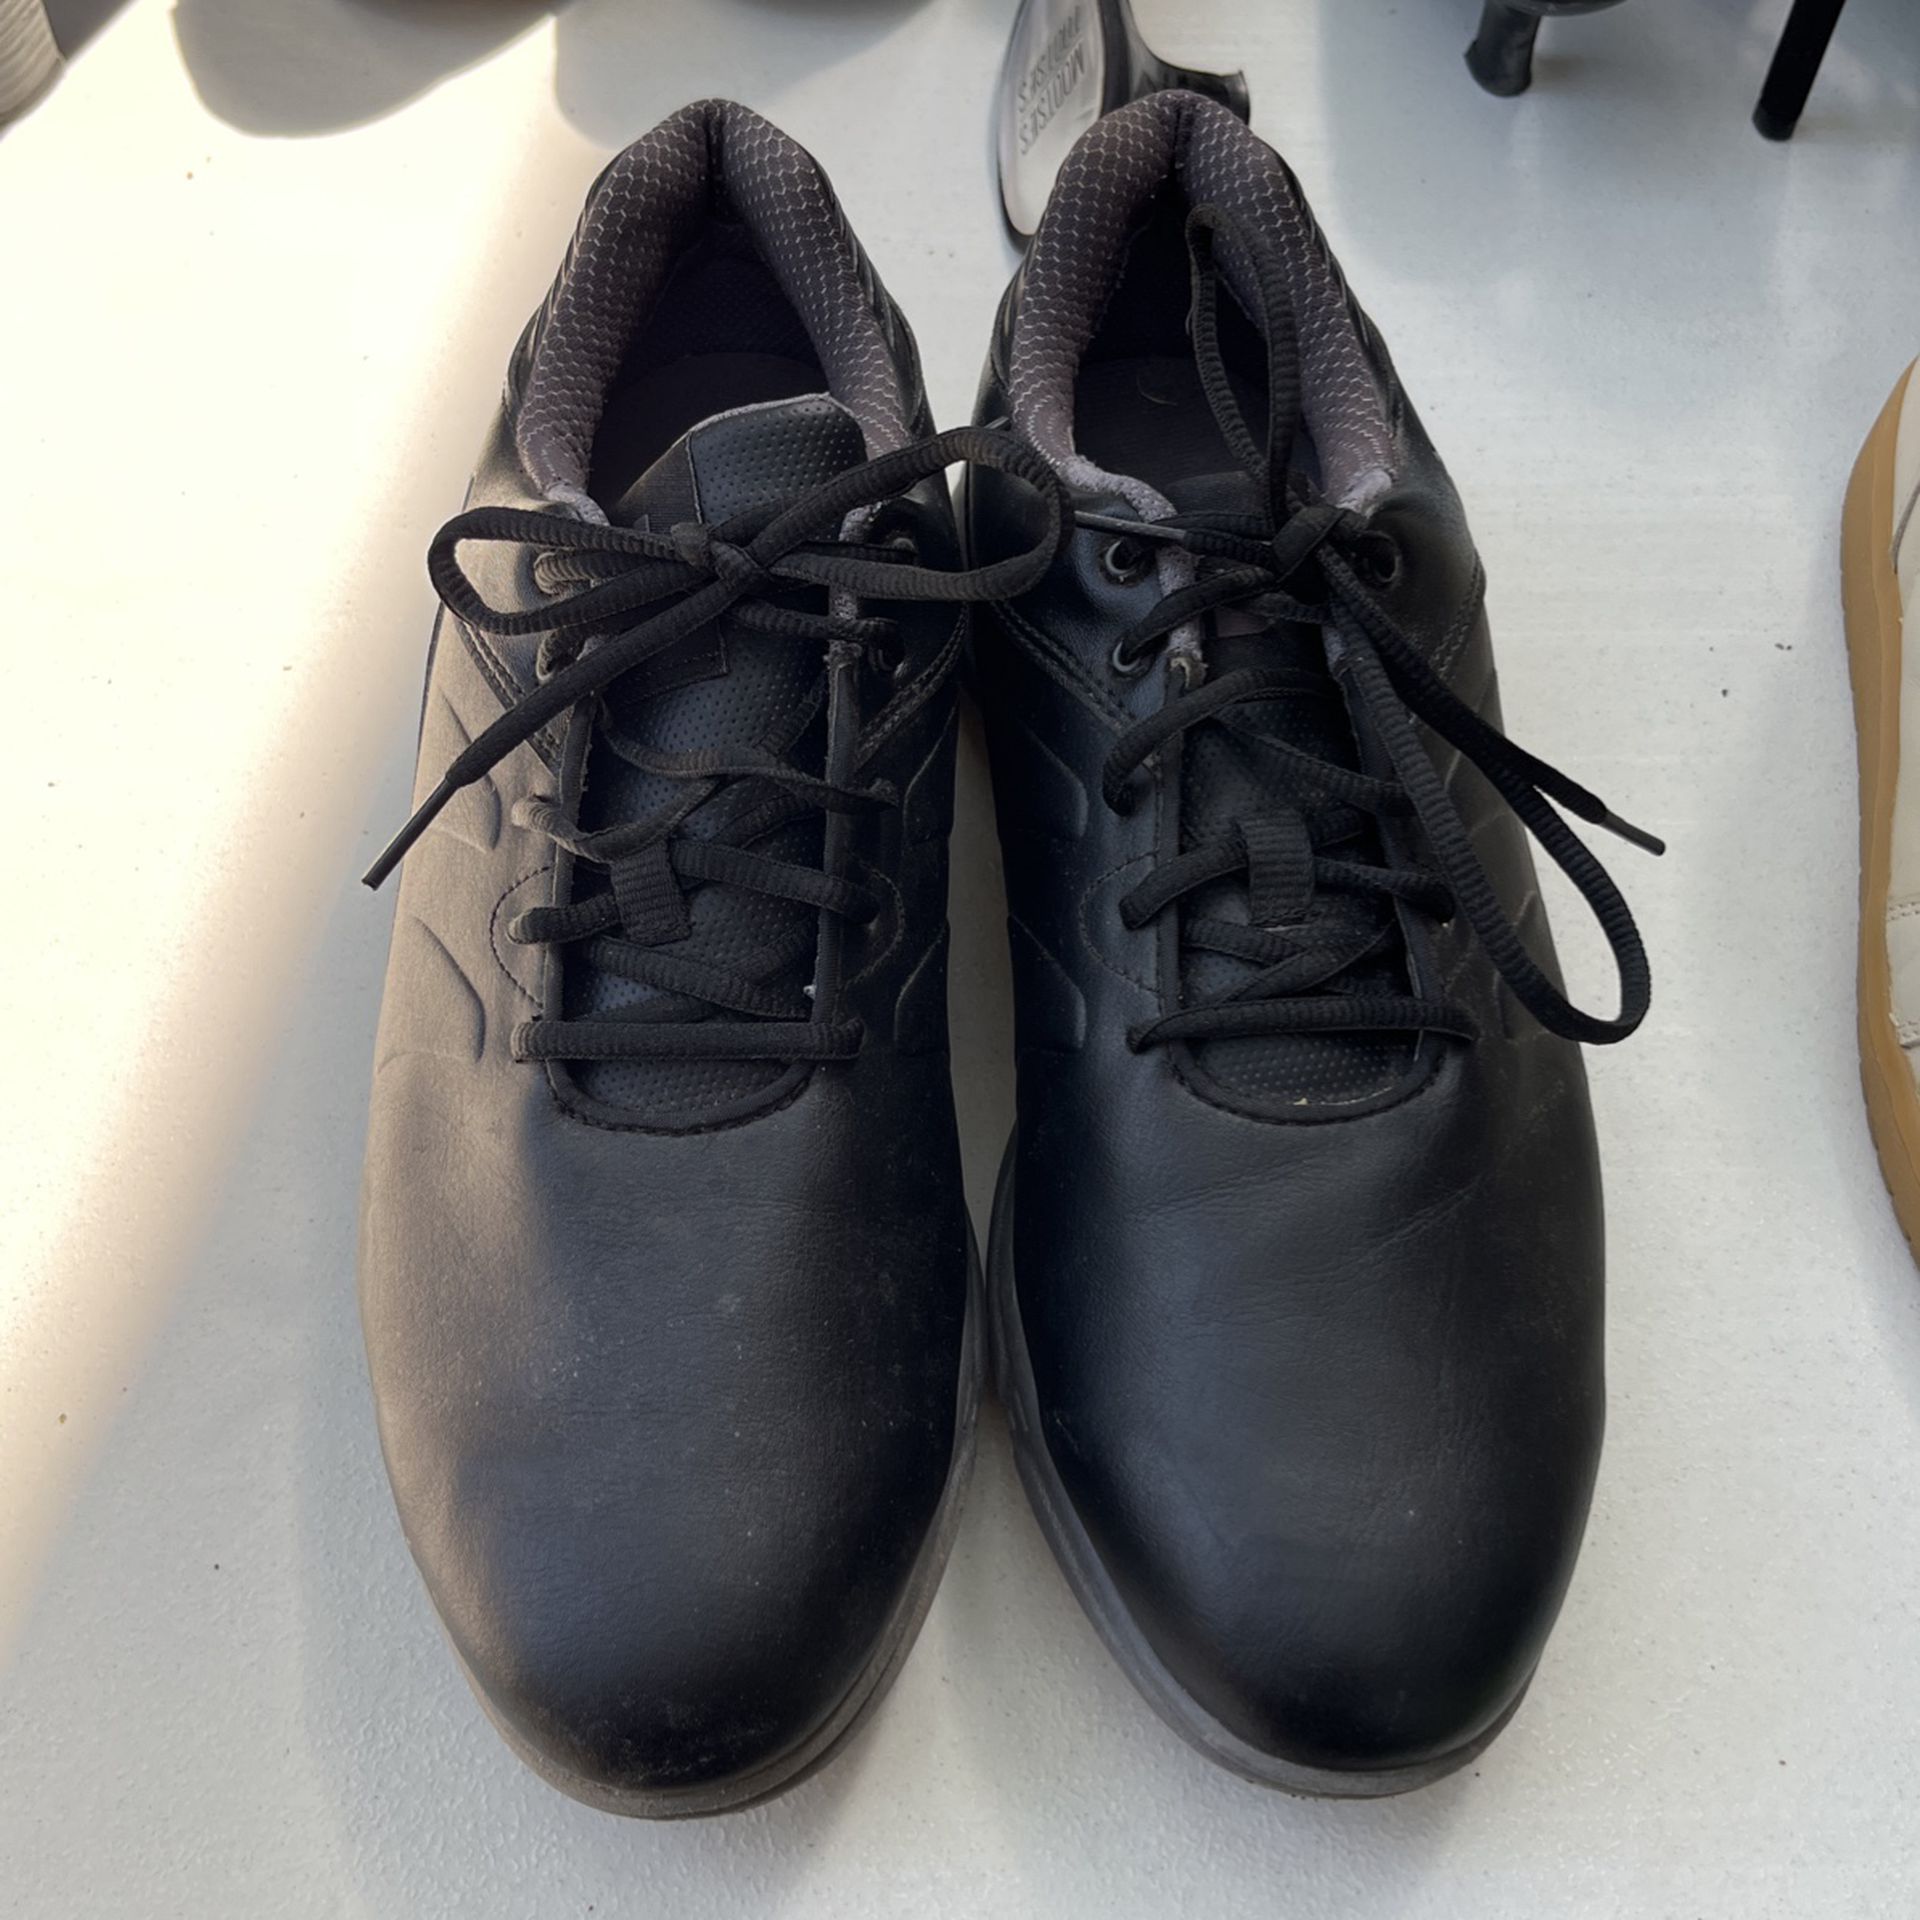 FootJoy Men’s Golf Shoes- Size 10.5